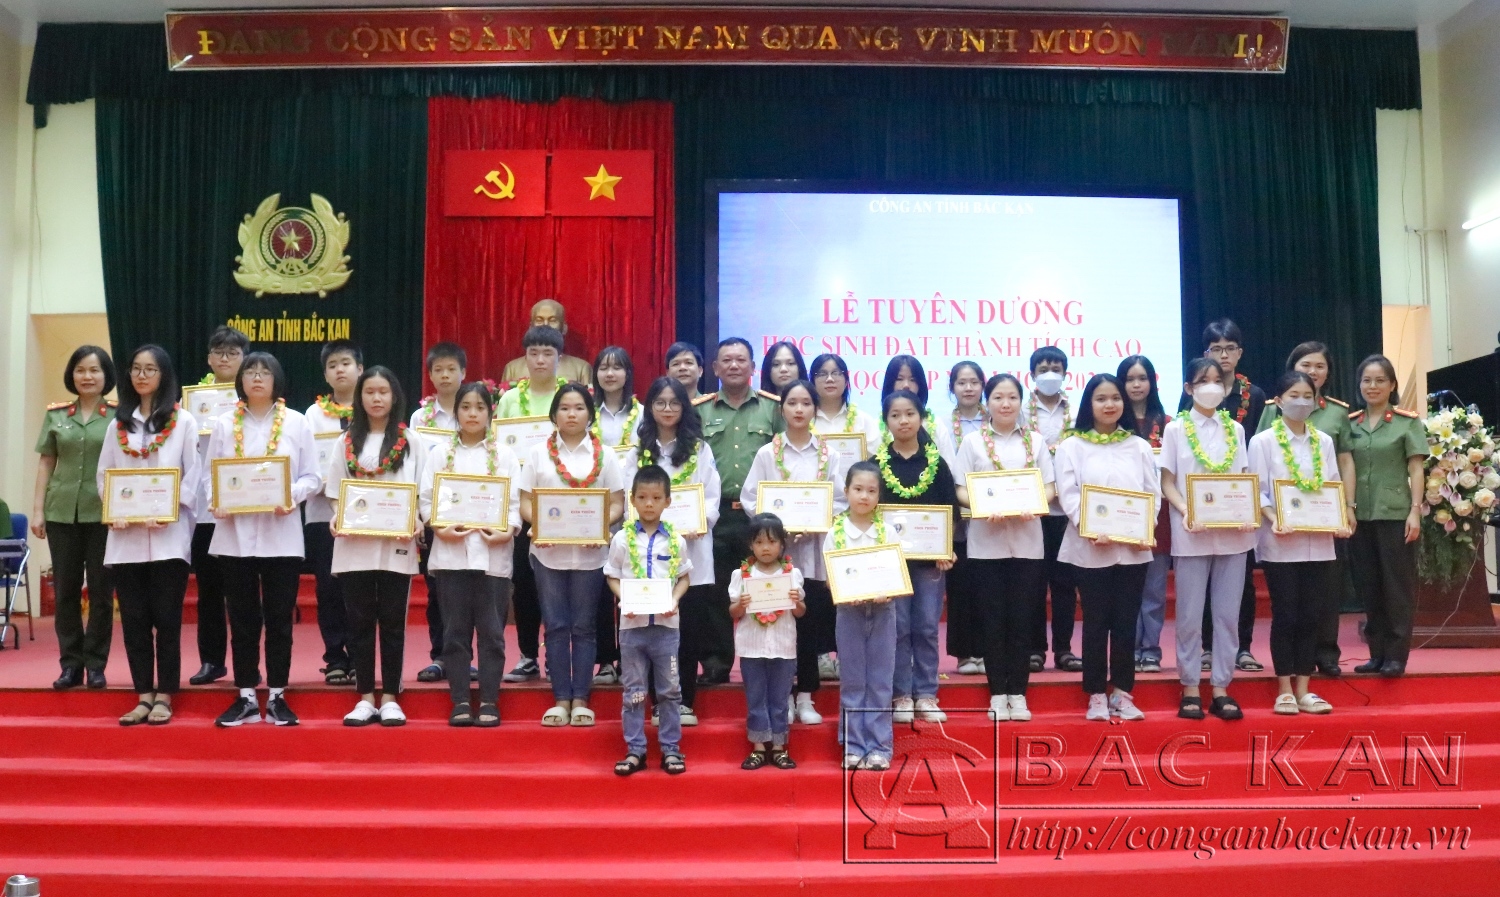 Đại tá Đinh Quang Huy, Phó Giám đốc Công an tỉnh tuyên dương, trao thưởng cho các cháu đạt thành tích cao trong các kỳ thi.  